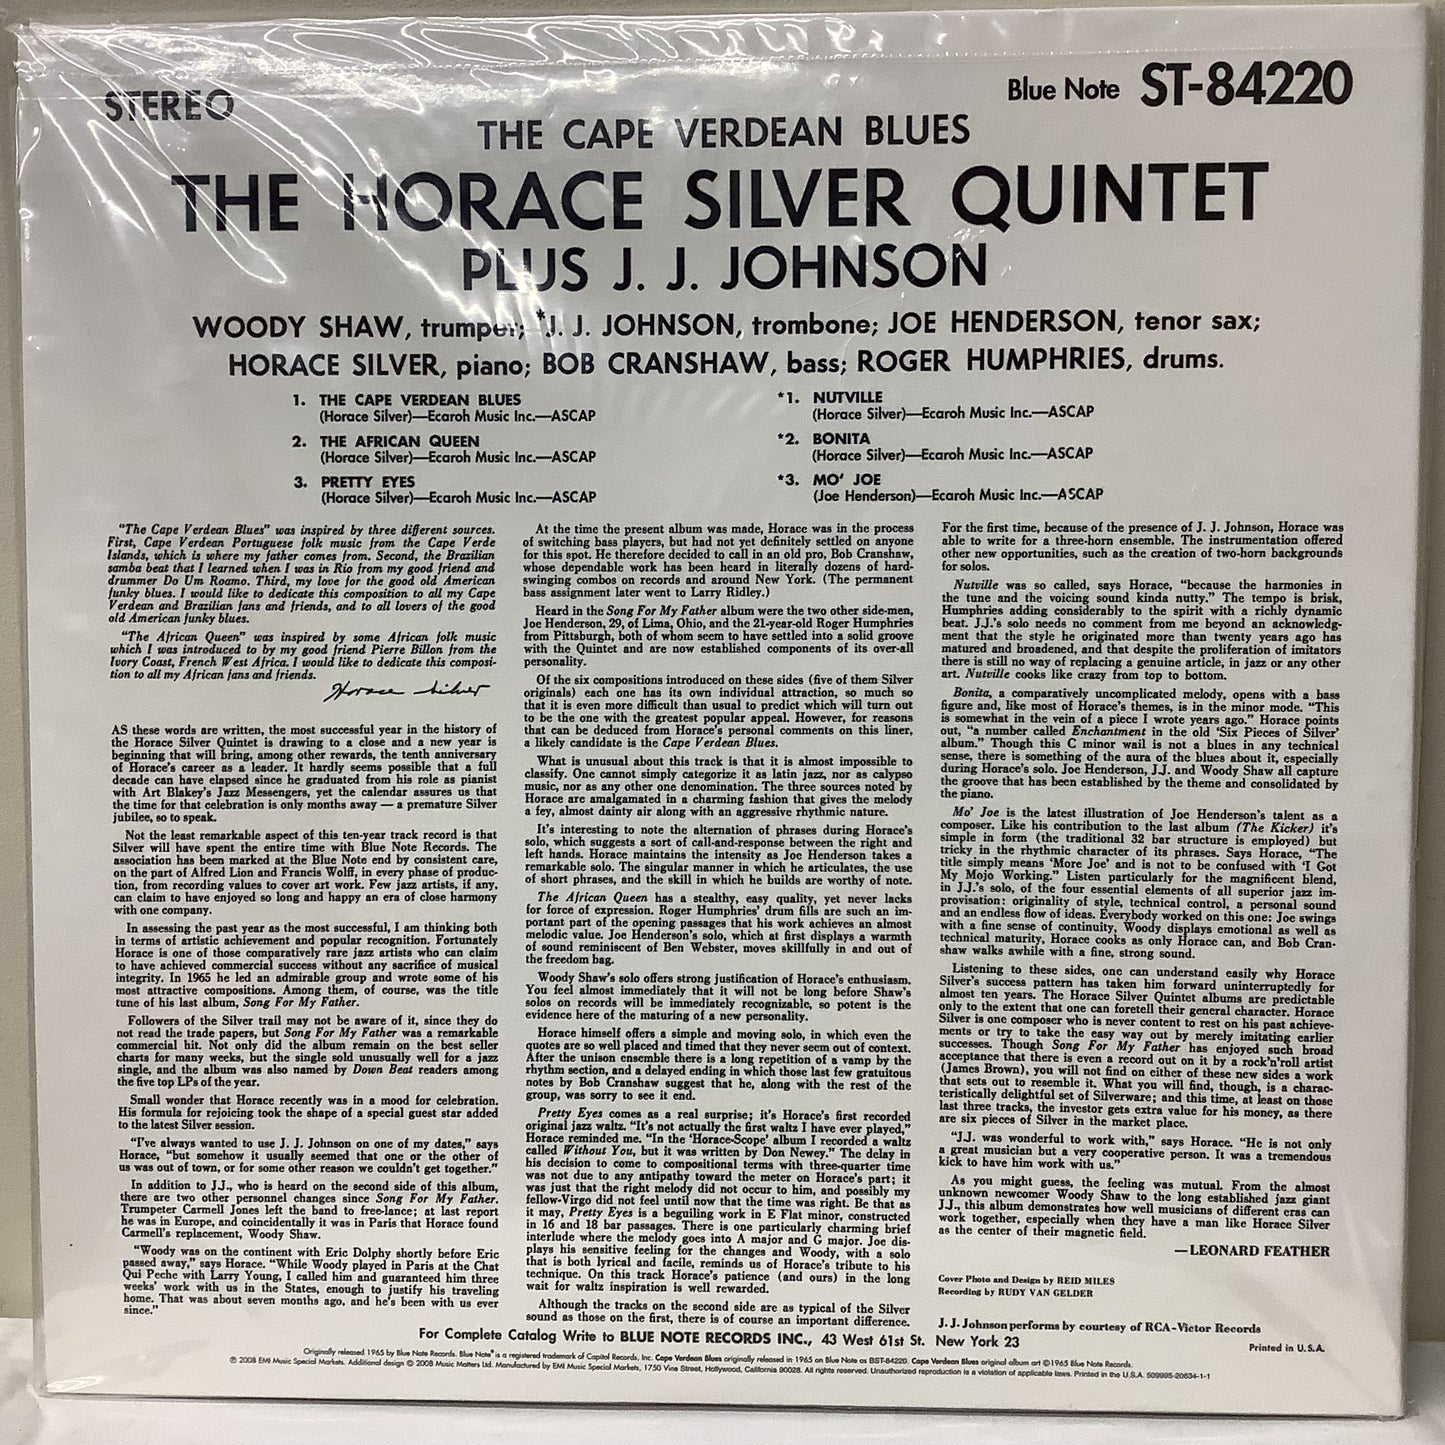 Horace Silver - The Cabo Verdean Blues - Blue Note Music Matters LP